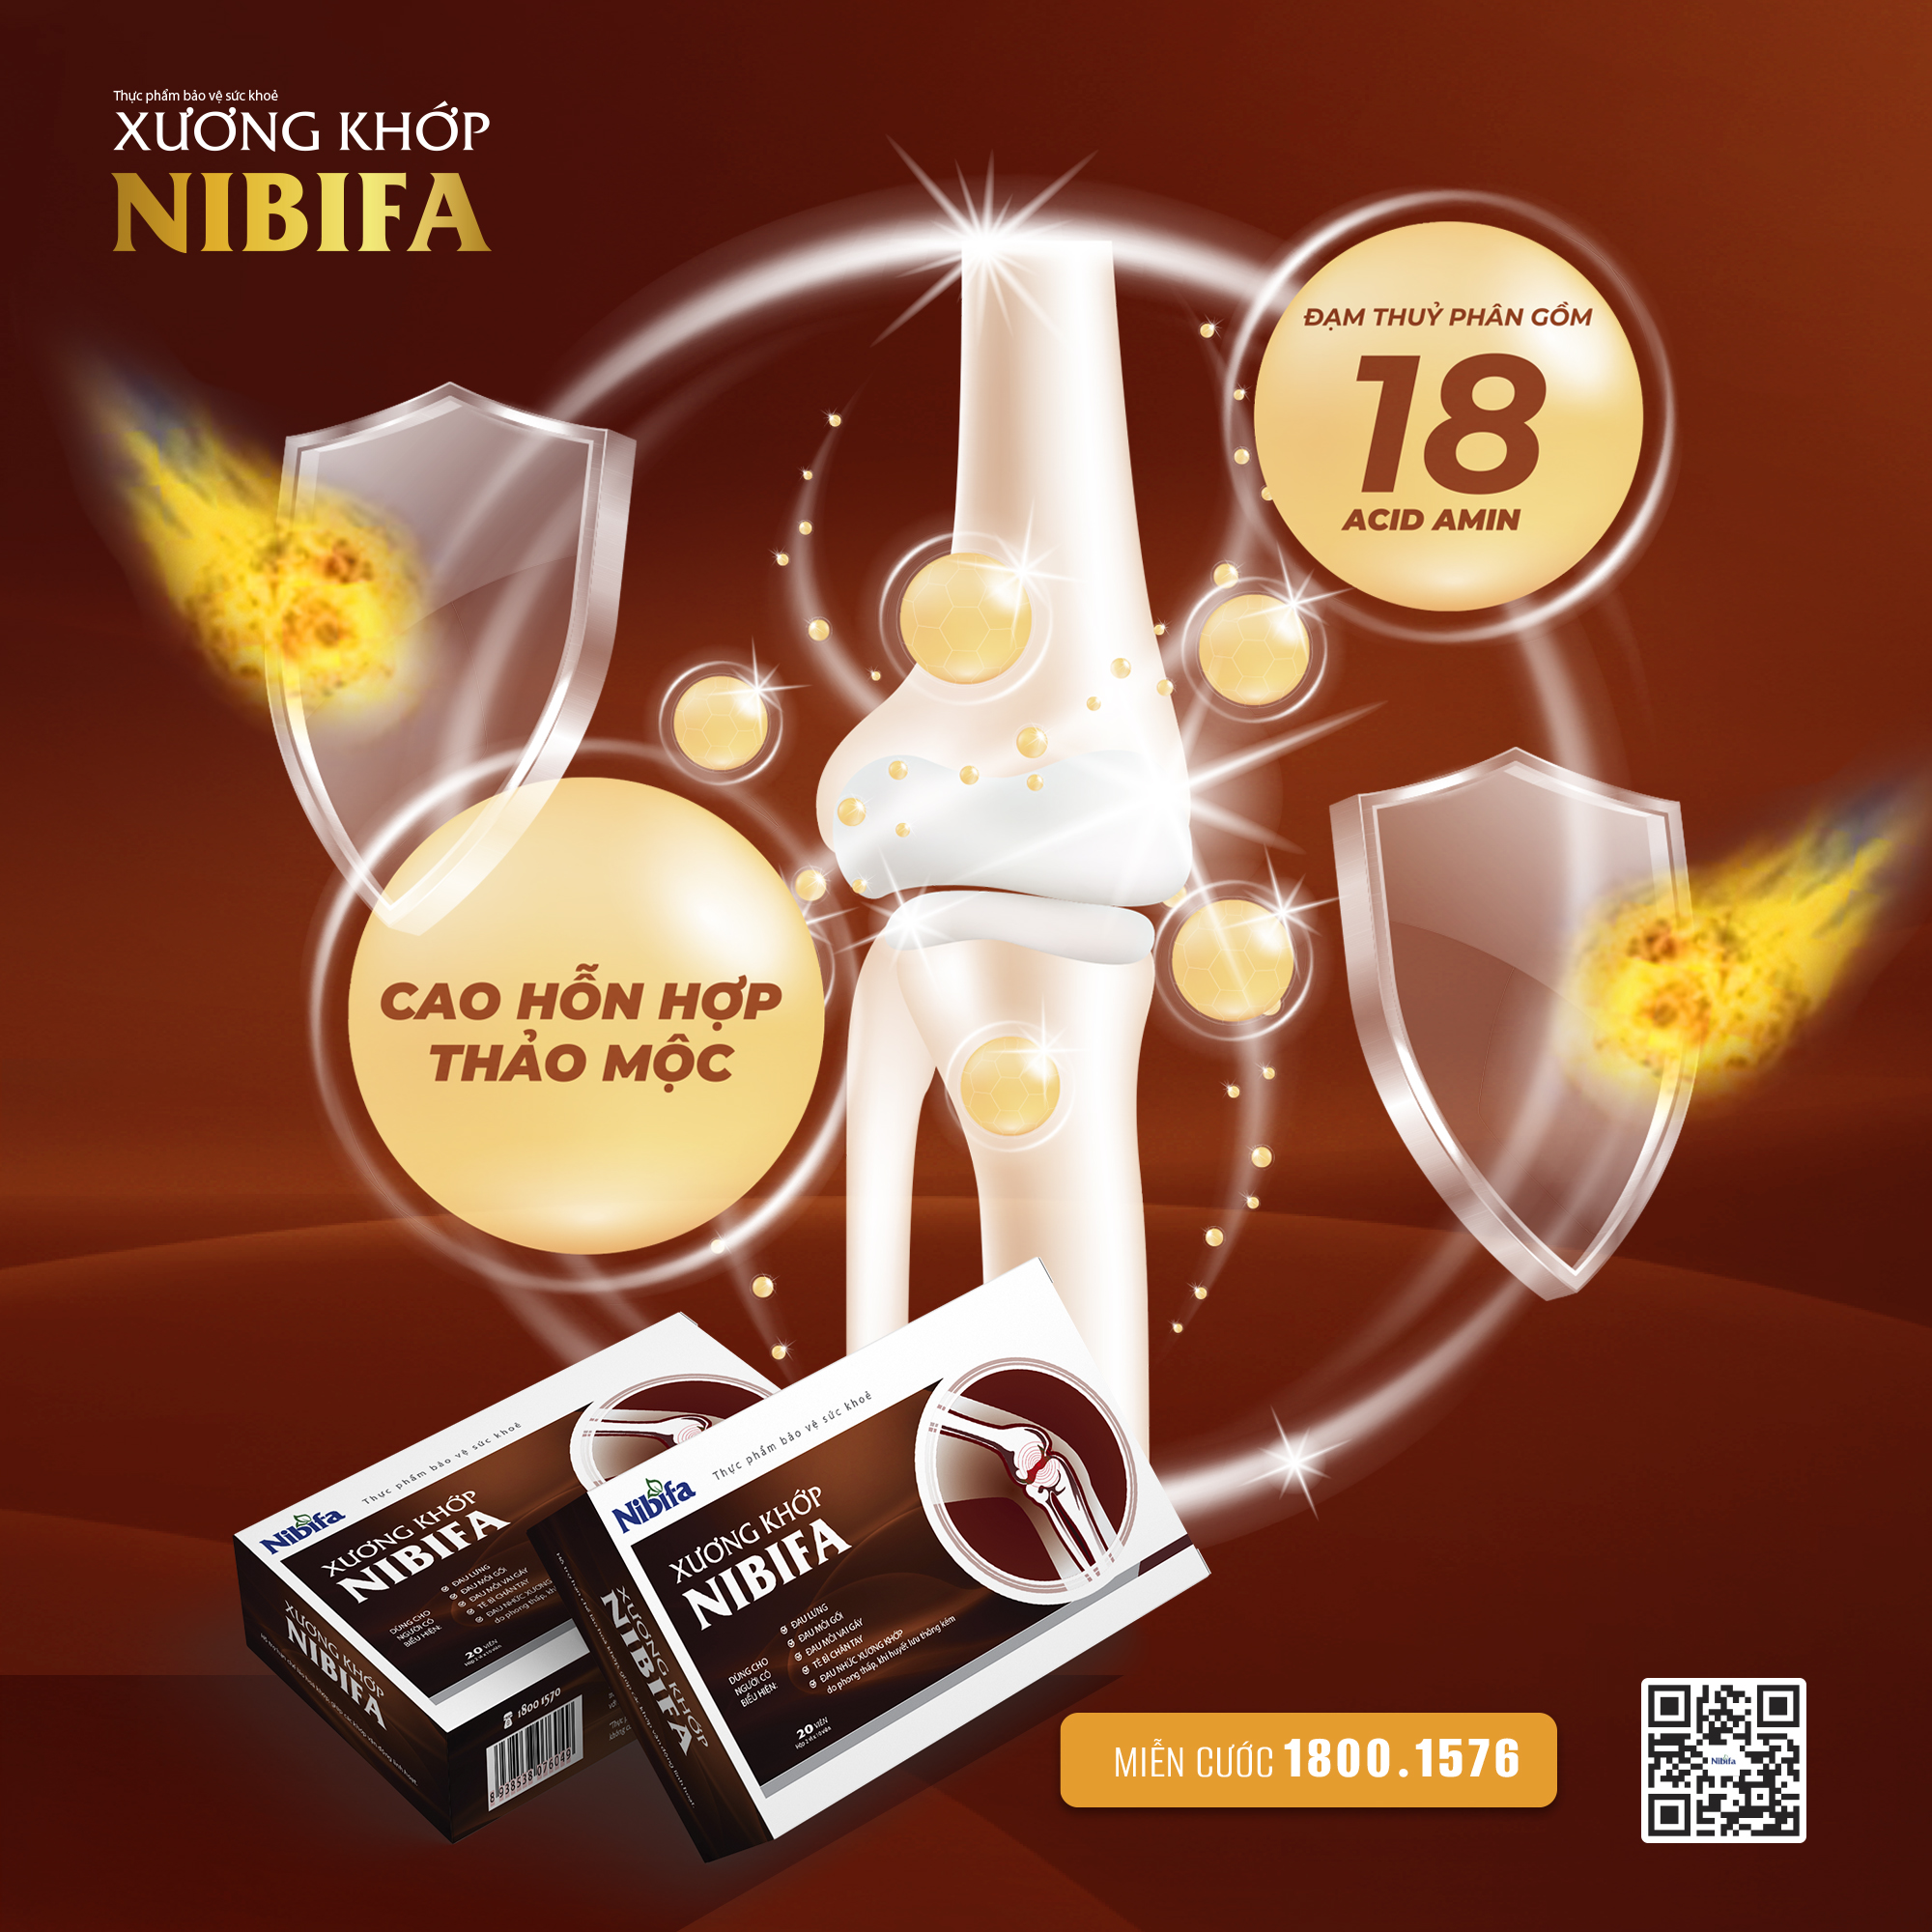 Xuong khơp nibifa sản xuất từ dược liệu tự nhiên